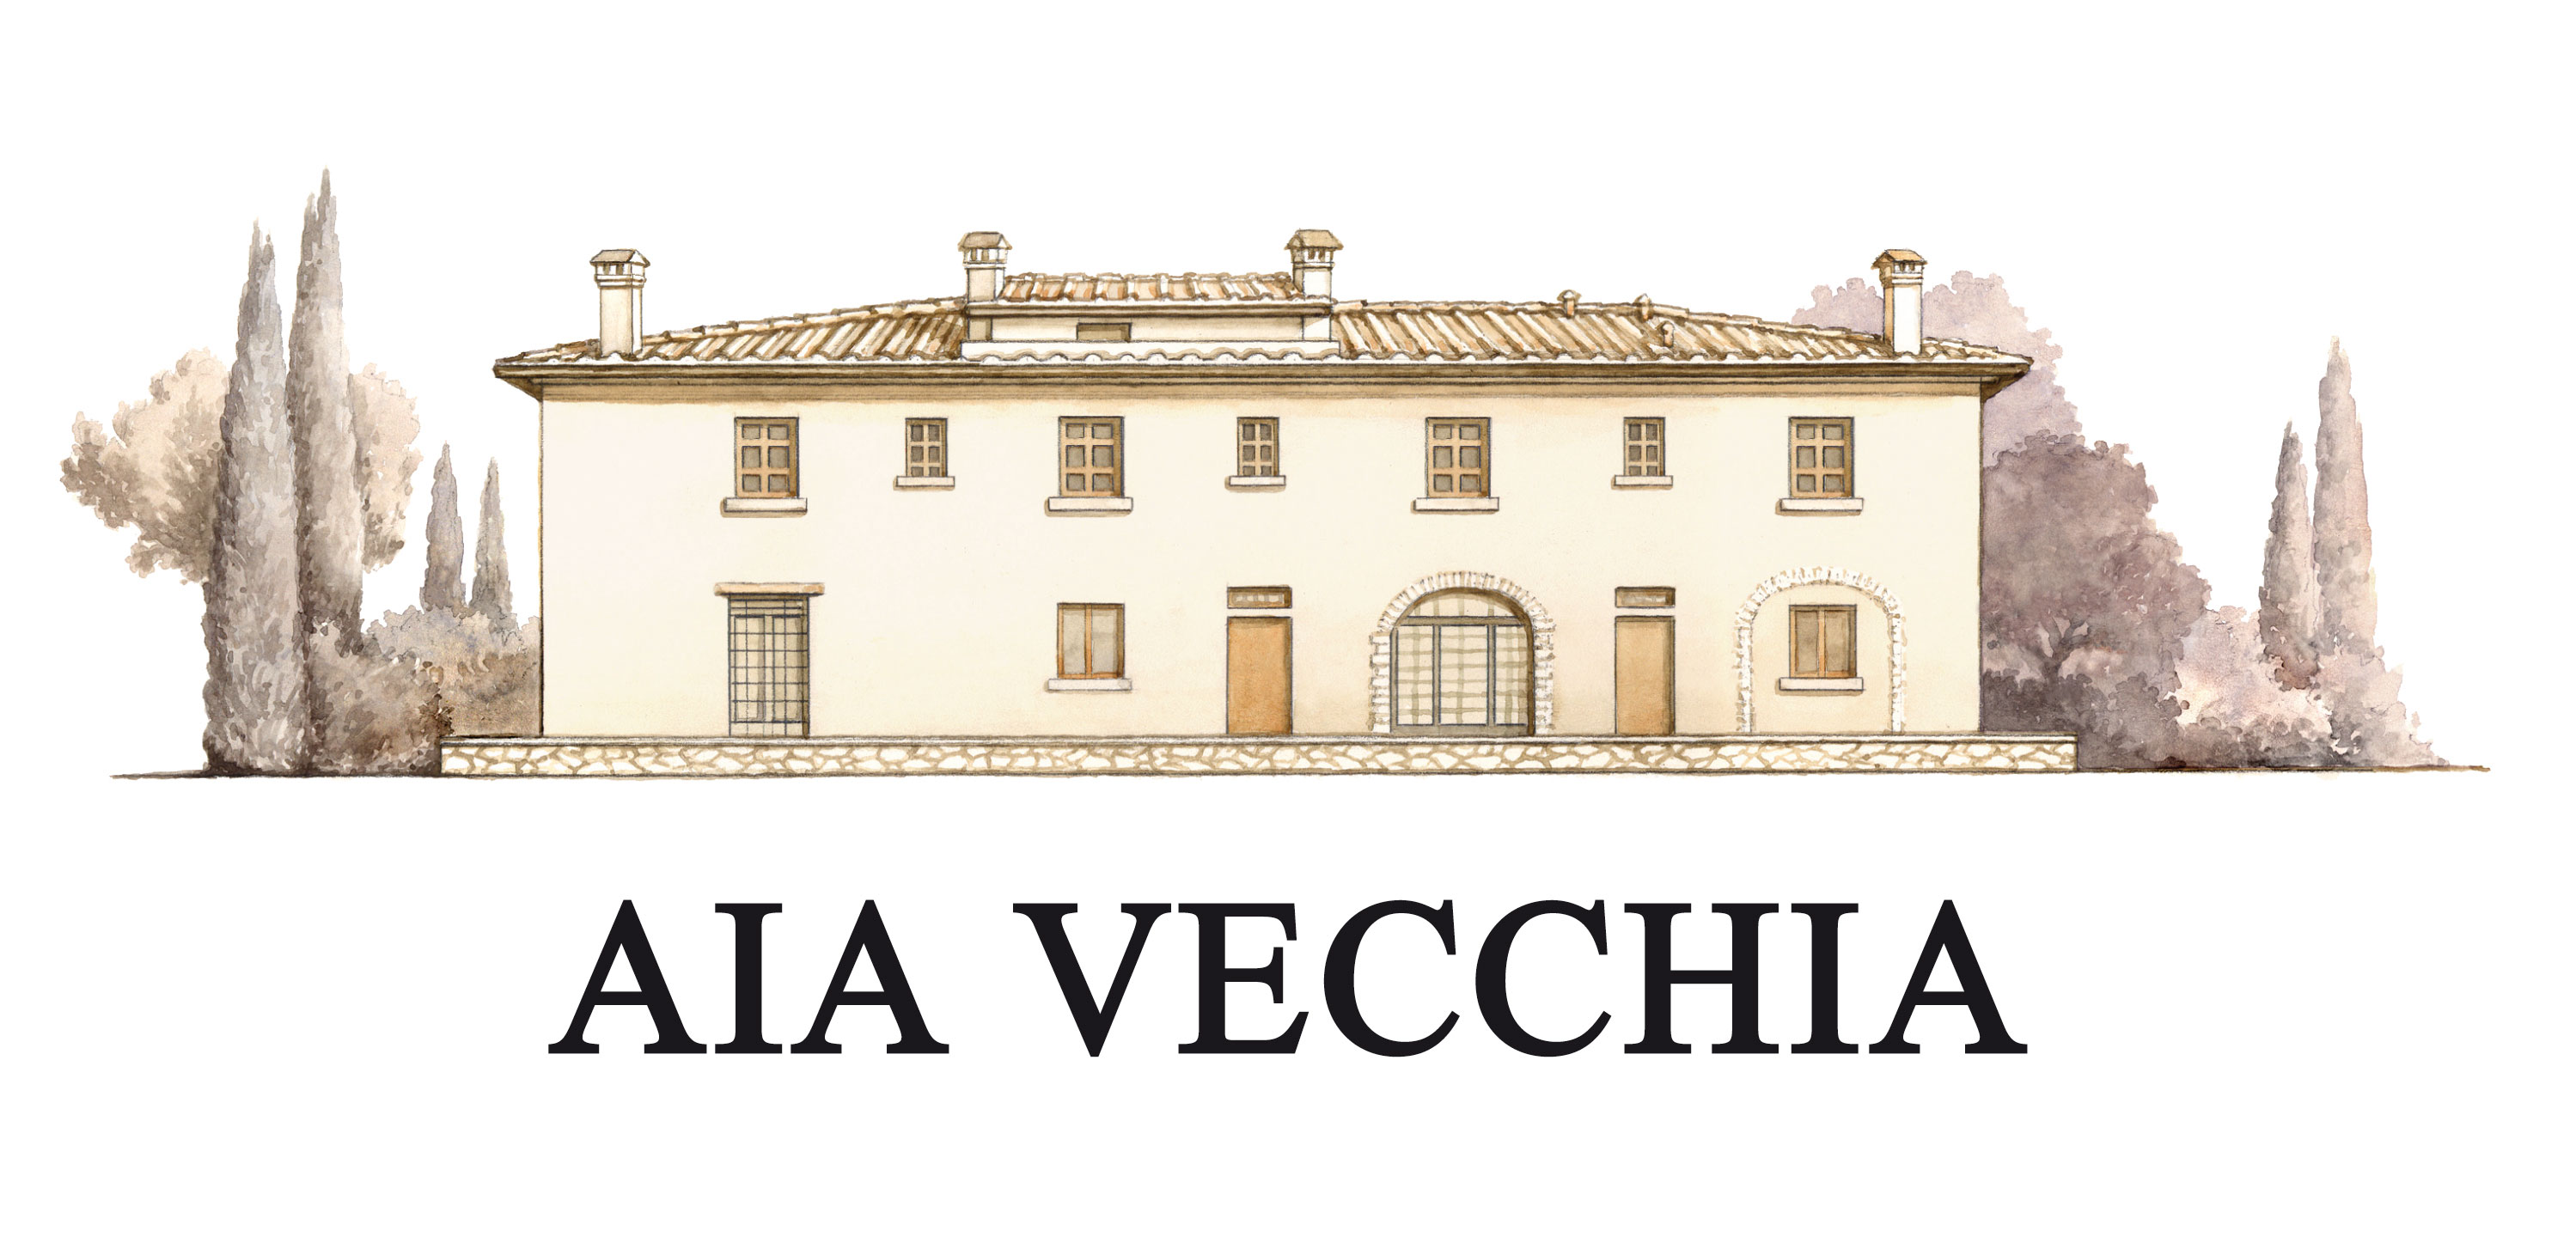 2015 AIA Vecchia Vermentino Toscana image